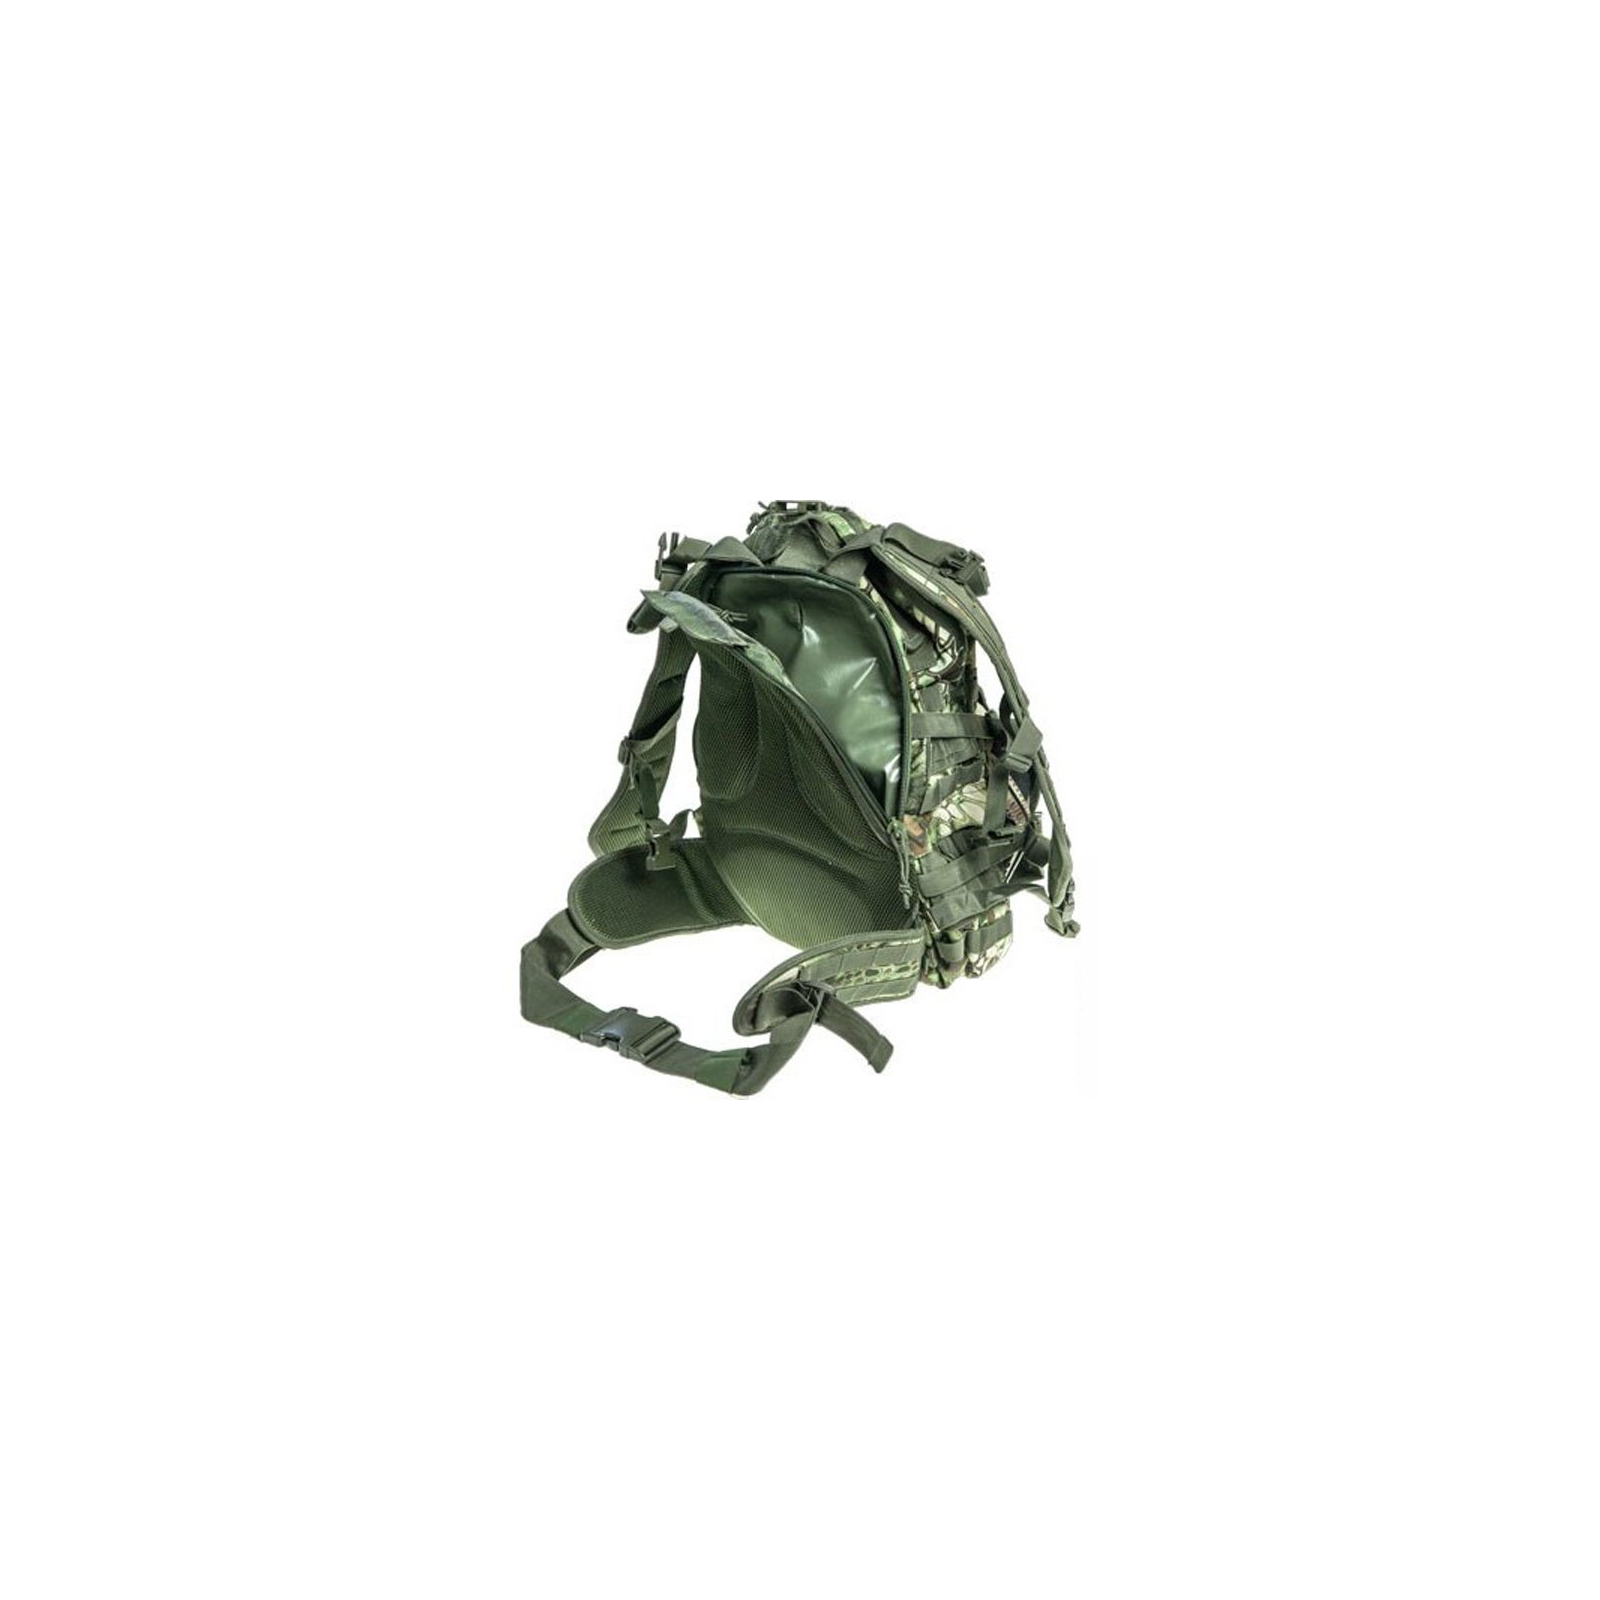 Рюкзак туристичний Skif Tac тактический патрульный 35 литров kryptek green (GB0110-KGR) зображення 3